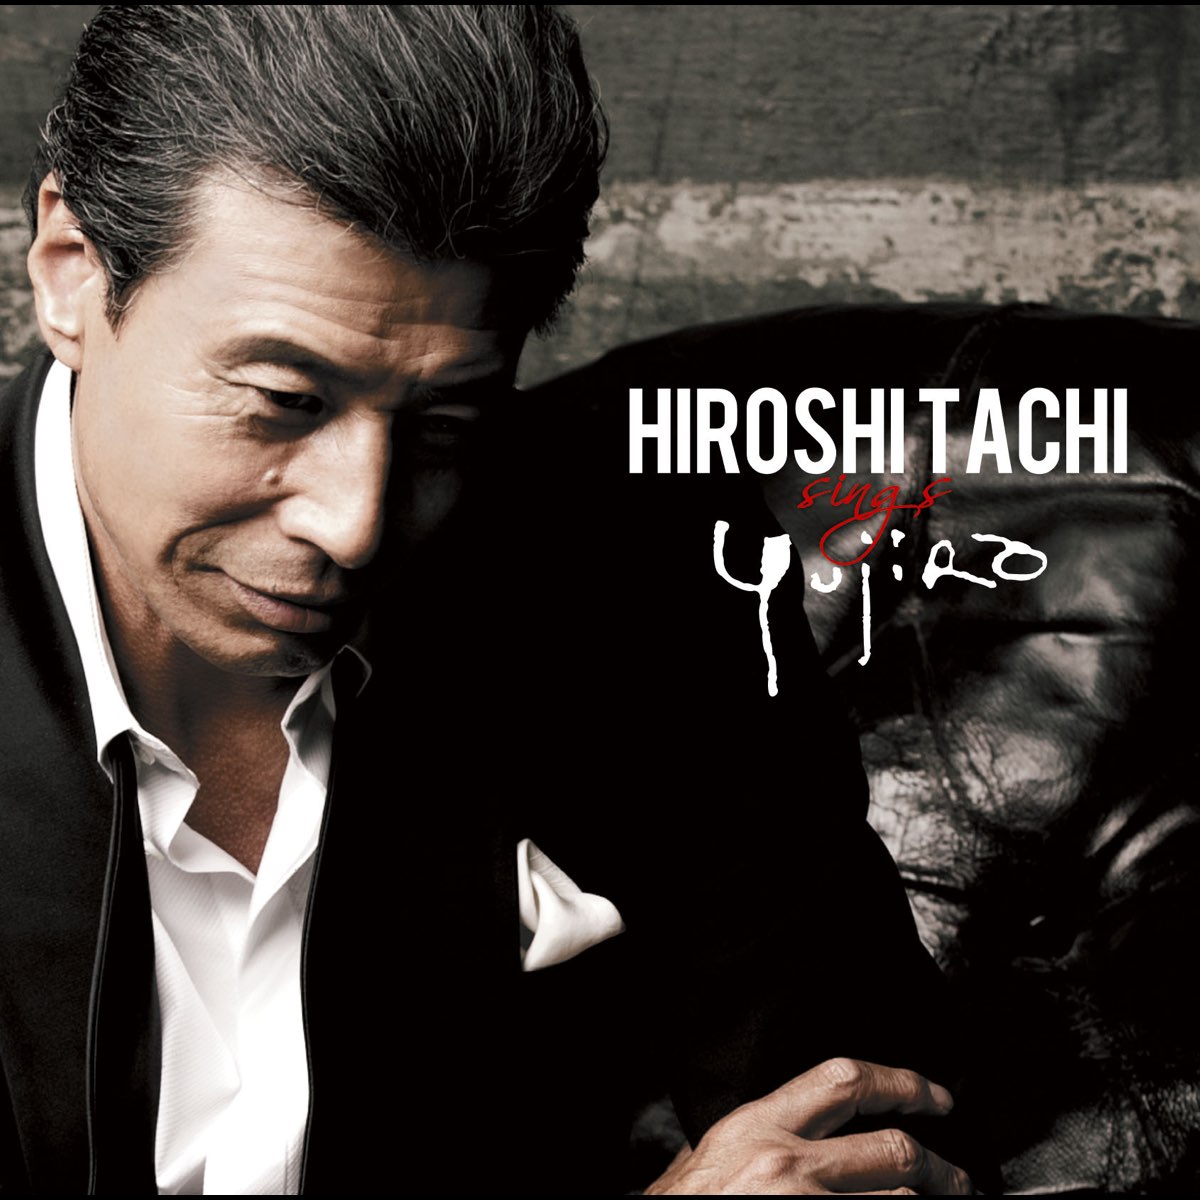 Hiroshi Tachi Sings Yujiro By Hiroshi Tachi On Apple Music